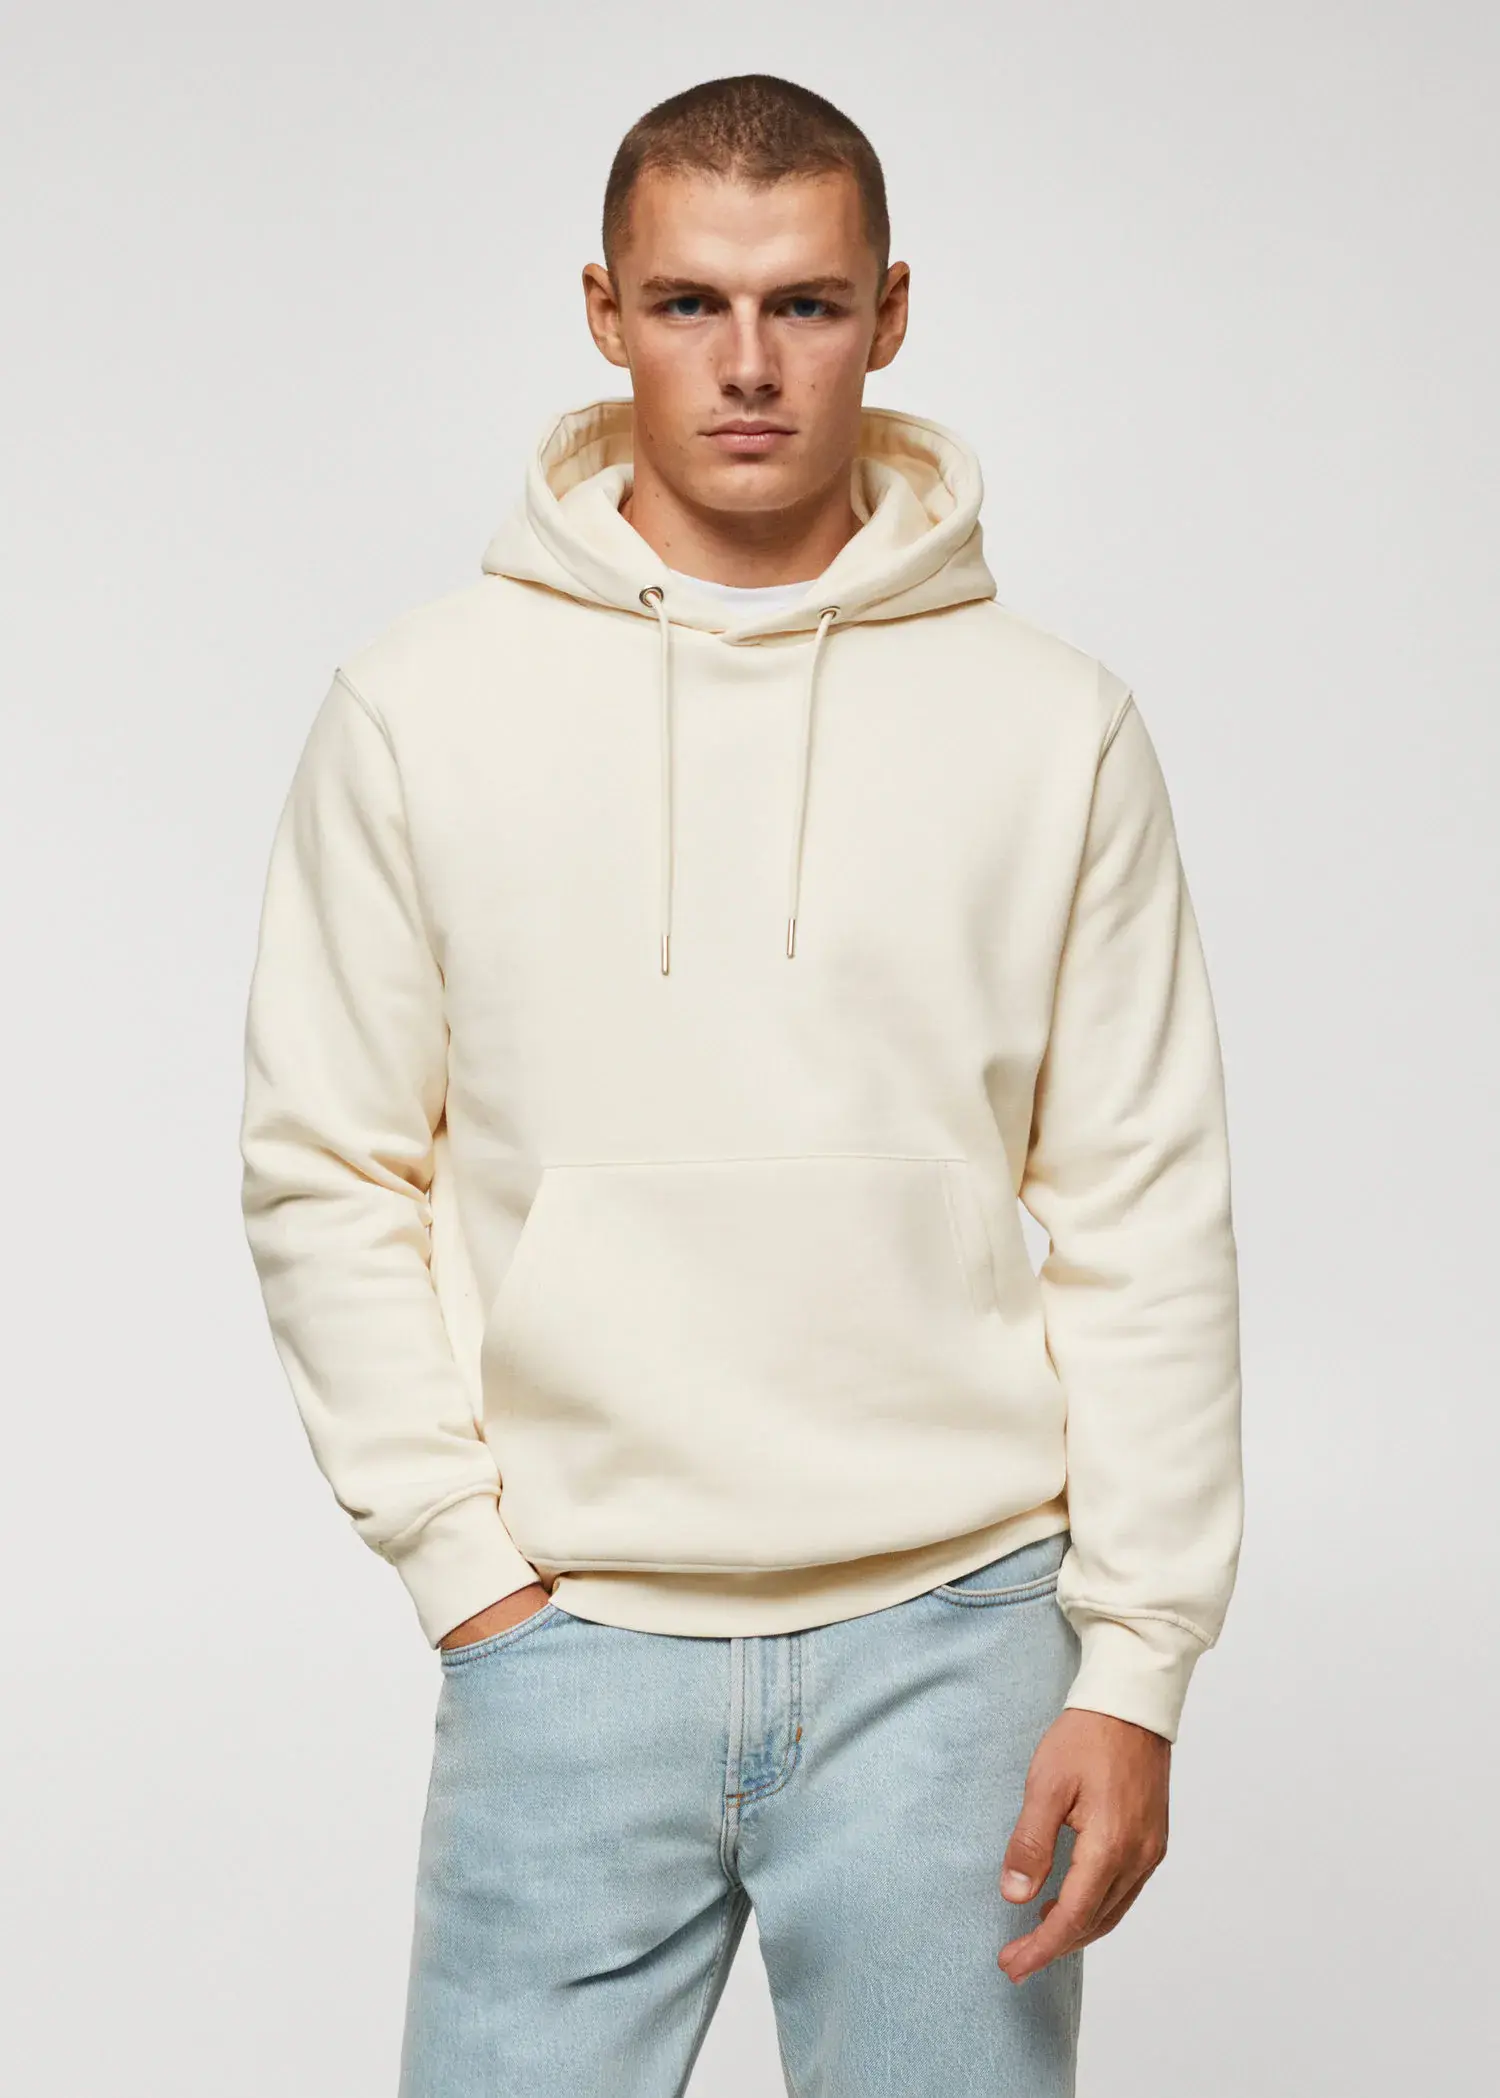 Mango Cotton kangaroo-hooded sweatshirt. 2